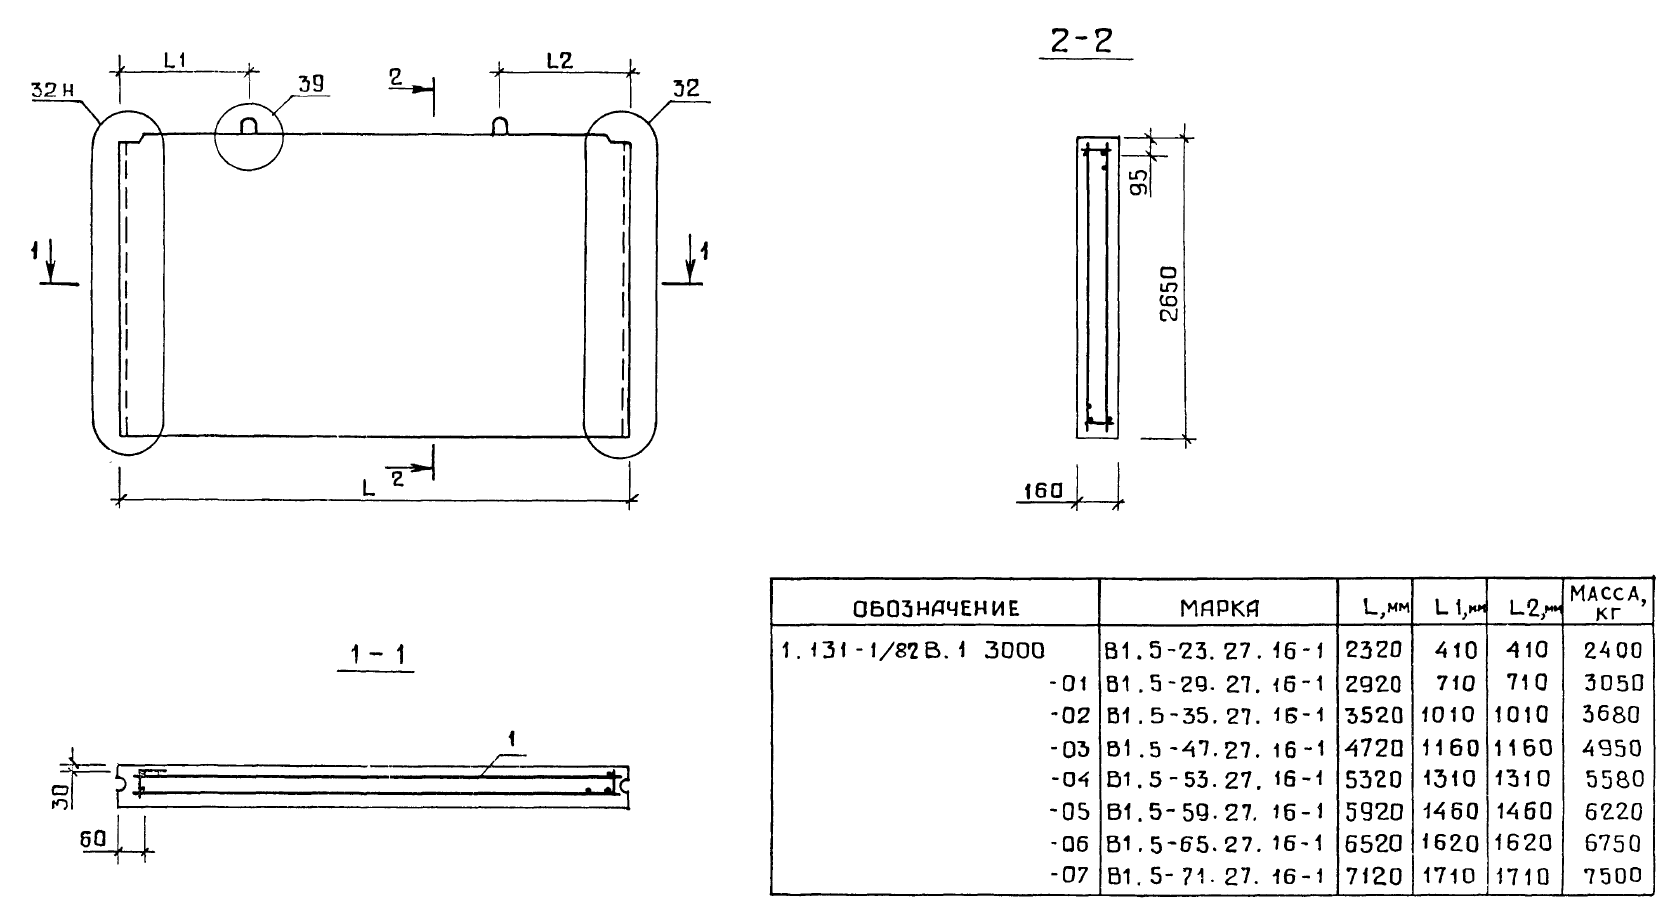 Внутренняя стеновая панель В1.5-47.27.16-1 серия 1.131-1/82